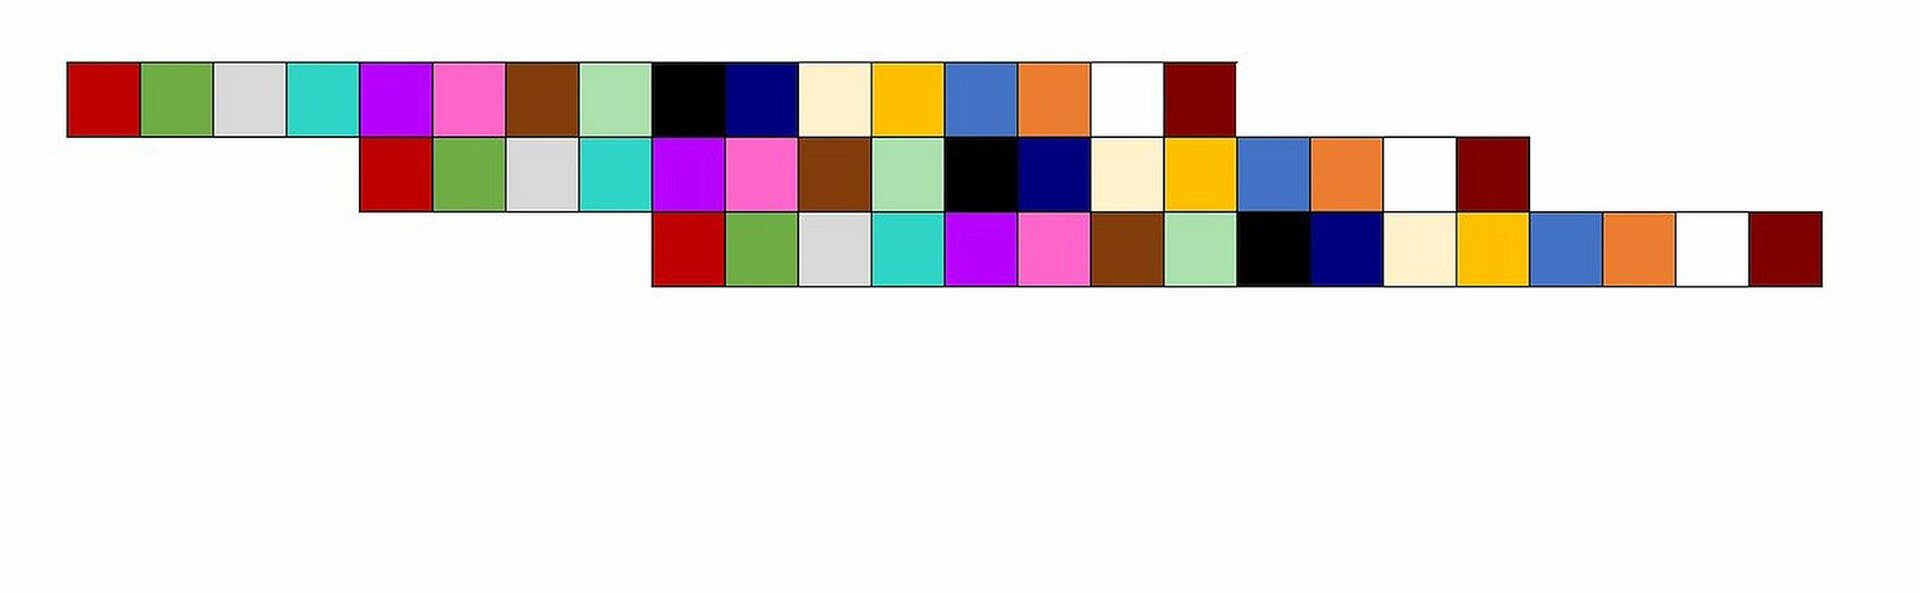 Ilustracja przedstawia schemat kanonu trzygłosowego w którym drugi głos wchodzi po czwartym takcie. Melodię przedstawiono jako szereg kolorowych prostokątów. Występują one w ustalonym porządku: czerwony, zielony, żółty, niebieski, brązowy, purpurowy, morski, seledynowy itd. W zapisie są trzy rzędy. W obu rzędach kolory występują w tej samej kolejności, tylko w drugim rzędzie są przesunięte o cztery prostokąty, a w trzecim o osiem. Na przykład kolor czerwony znajduje się pod purpurowym (czyli piątym kolorem w szeregu).